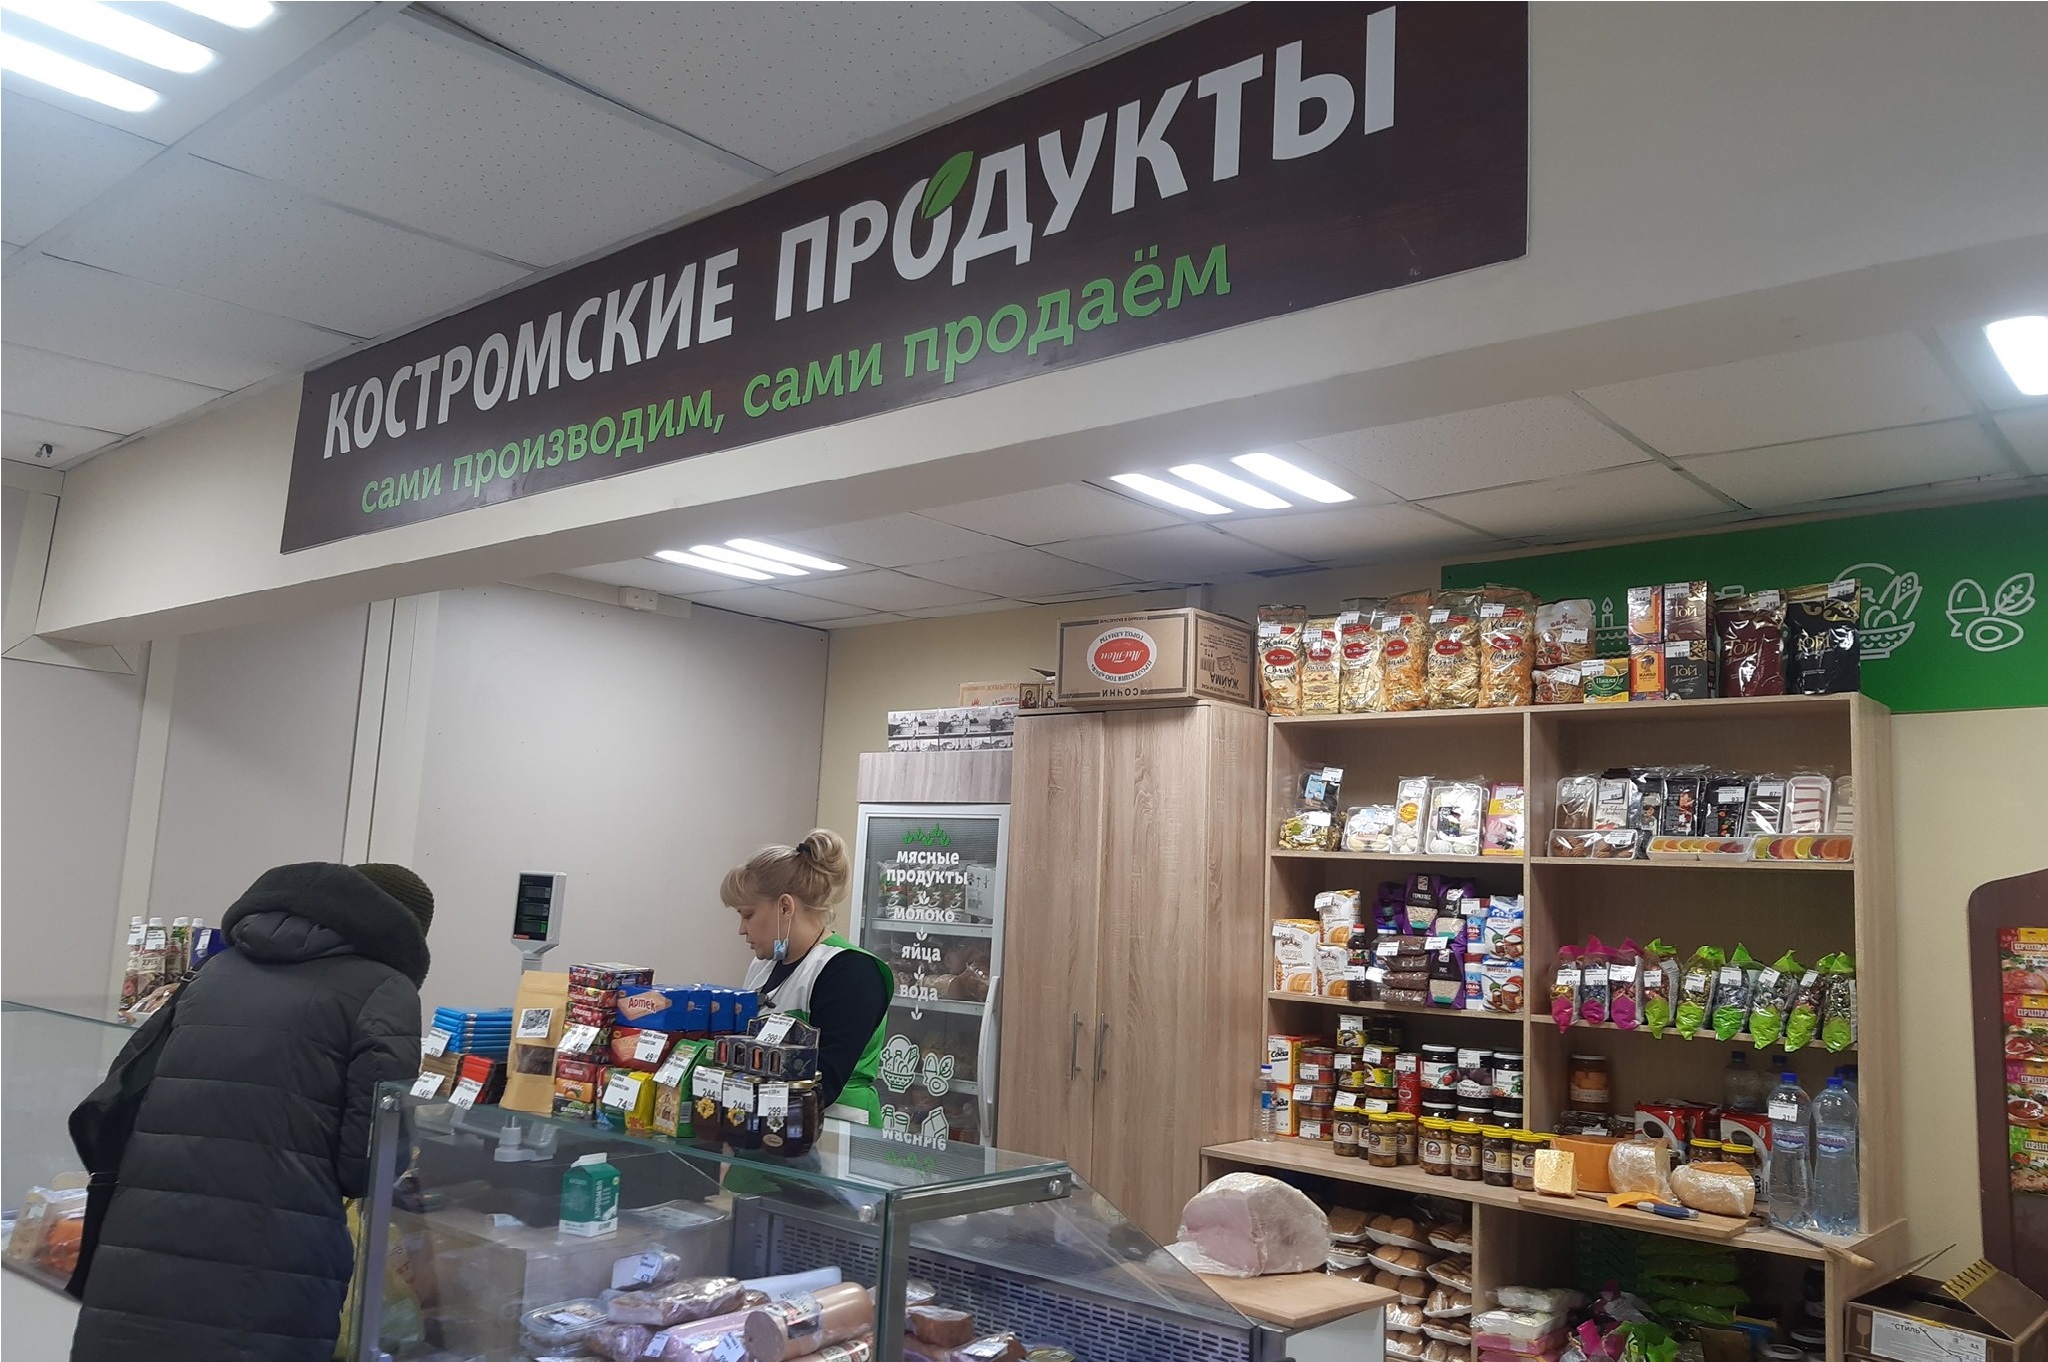 Звенигородский Магазин В Костроме Адрес